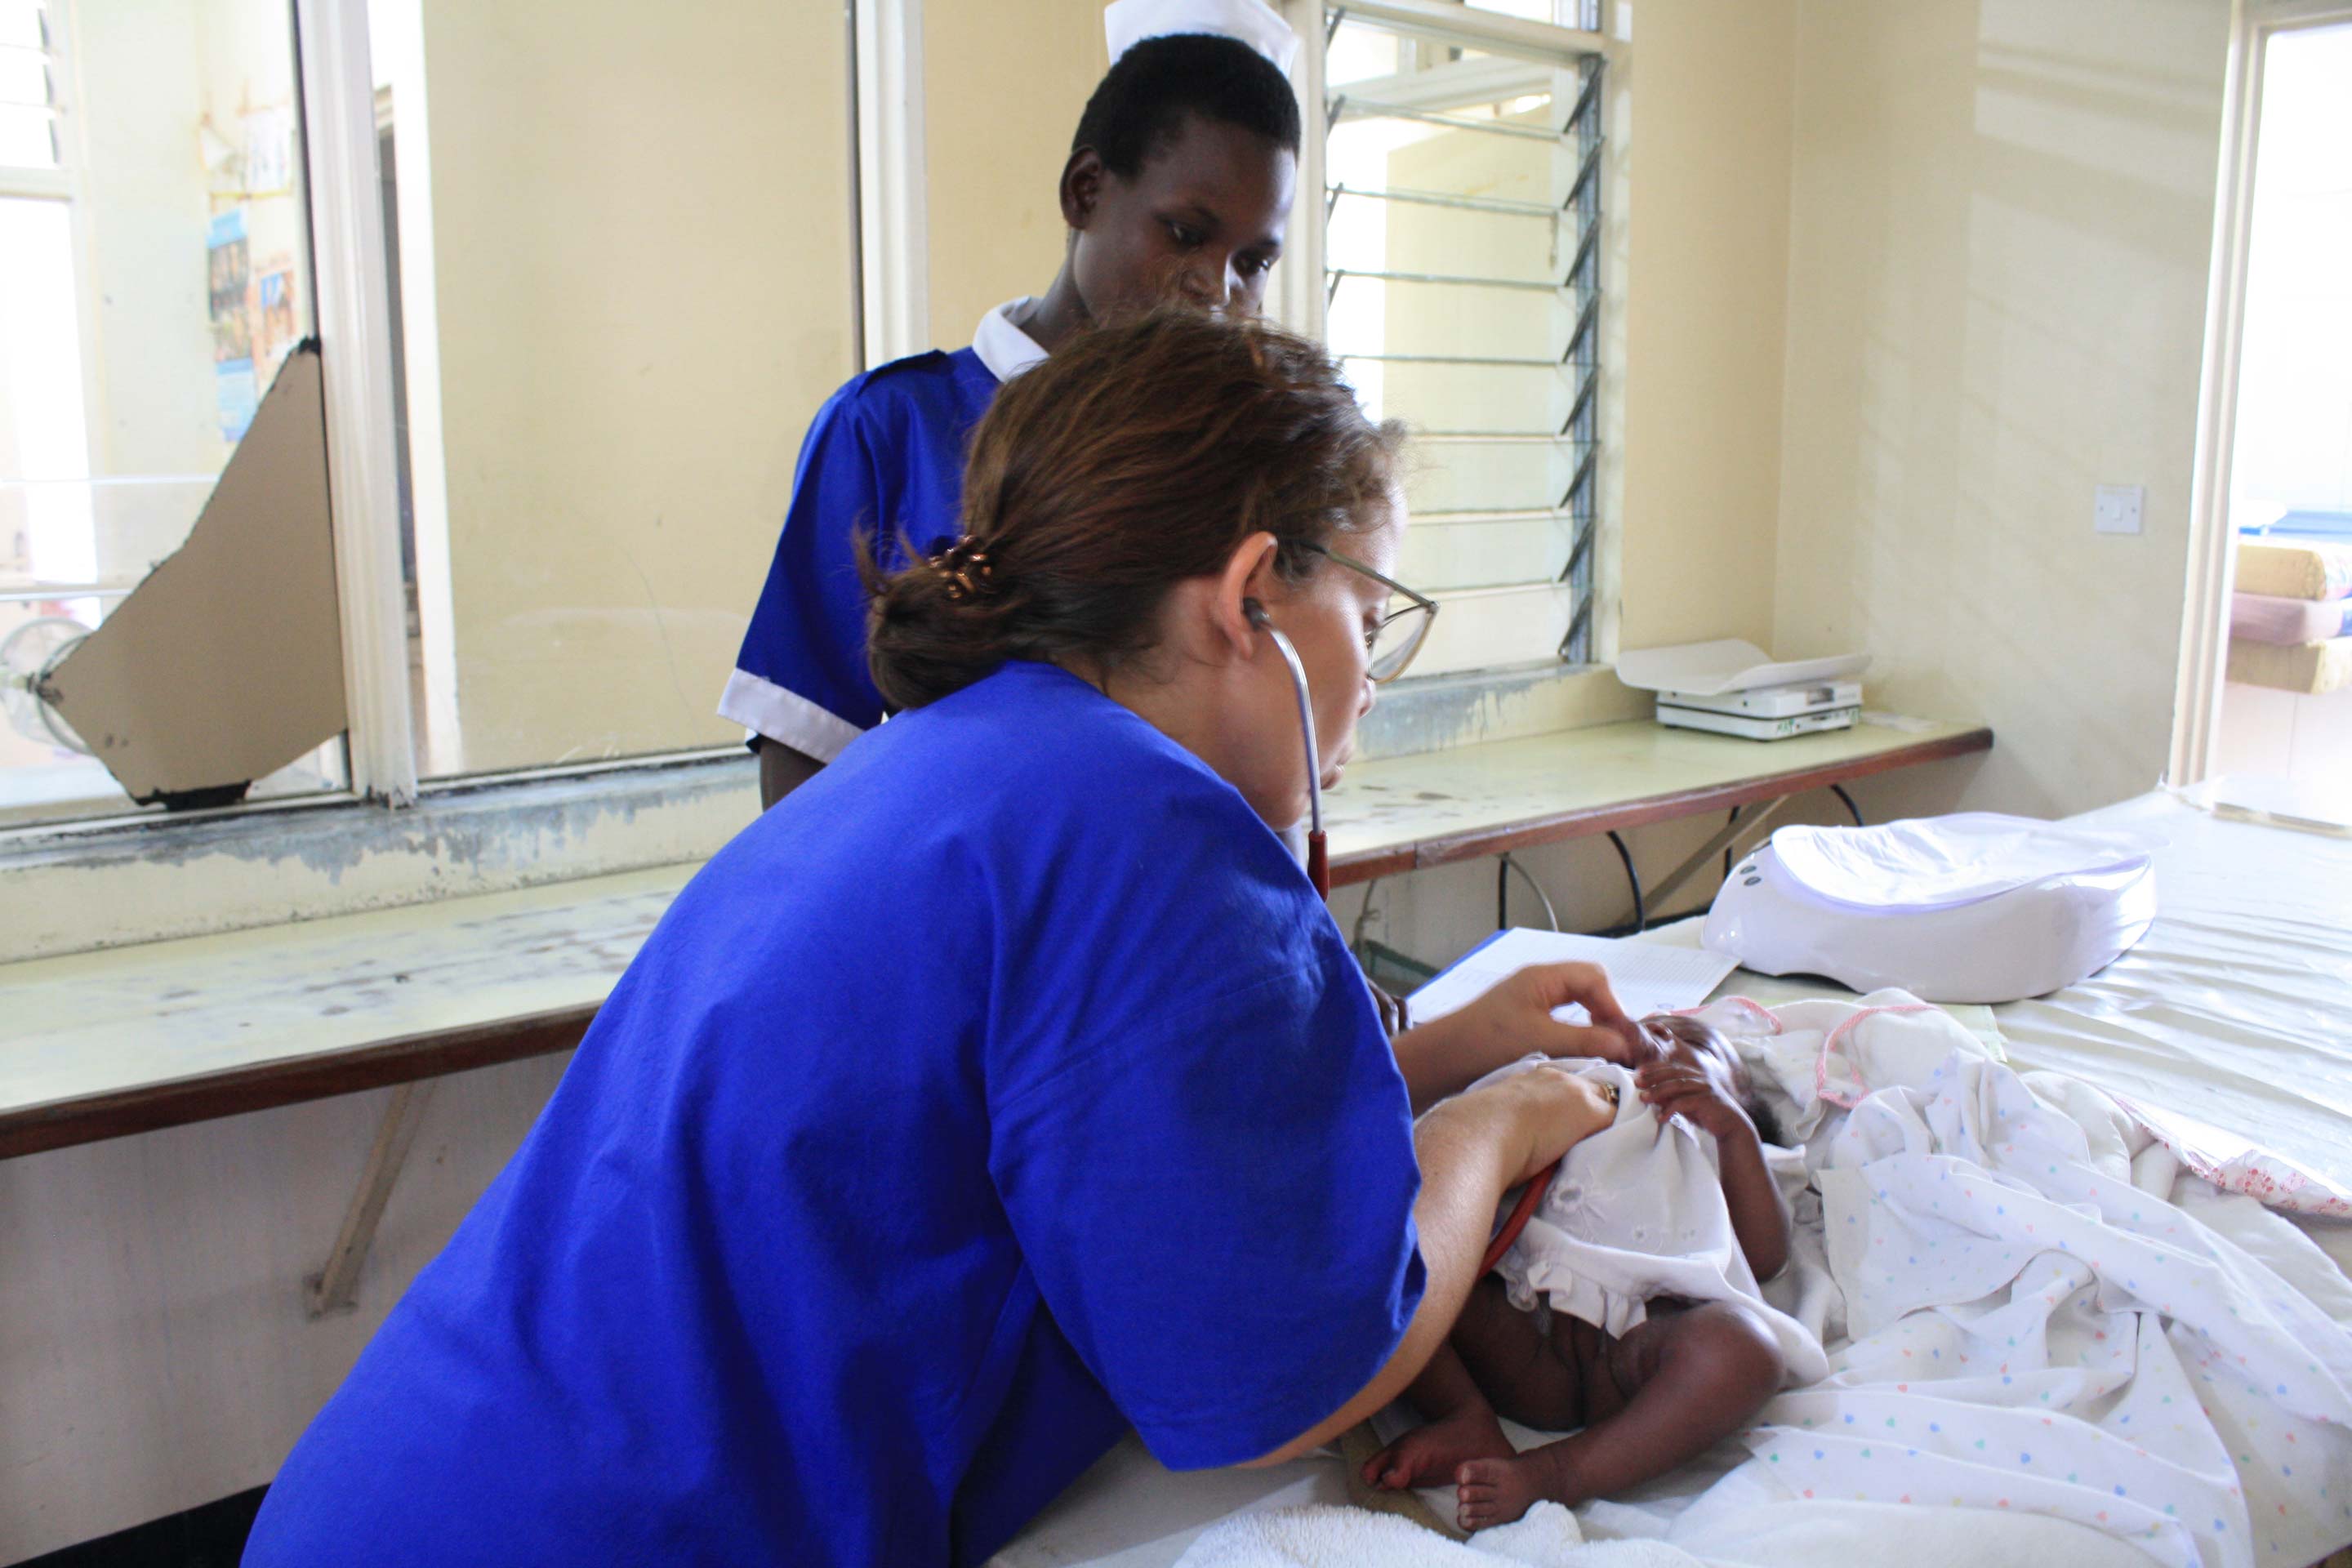 Una pediatra in Uganda. Da Torino a Kalongo per imparare a capire quando è bene mollare e quando no